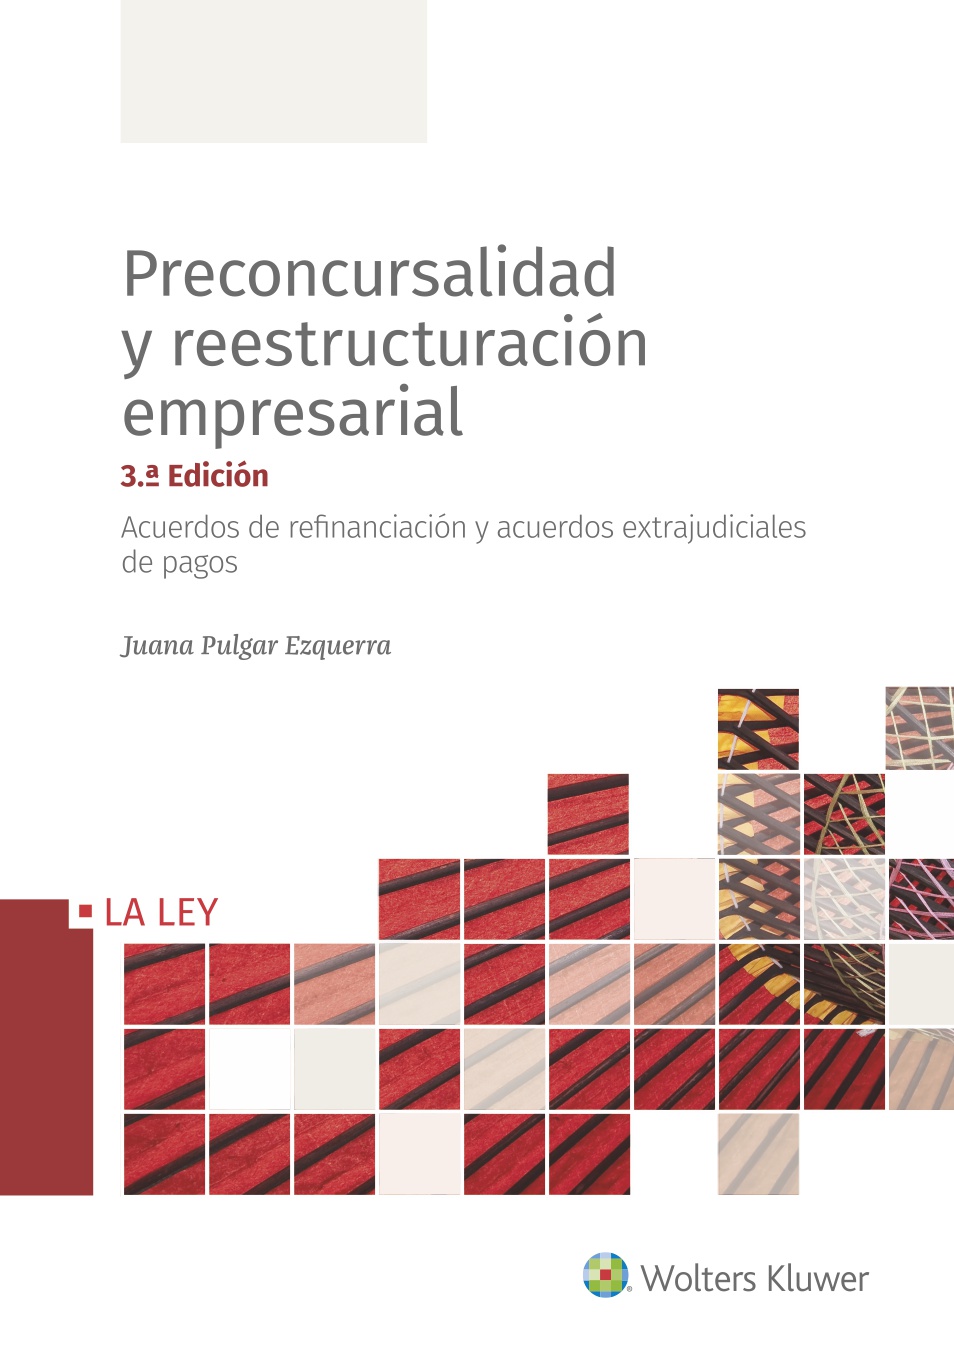 Preconcursalidad y reestructuración empresarial (3.ª Edición)   «Acuerdos de refinanciación y acuerdos extrajudiciales de pagos» (9788490209400)